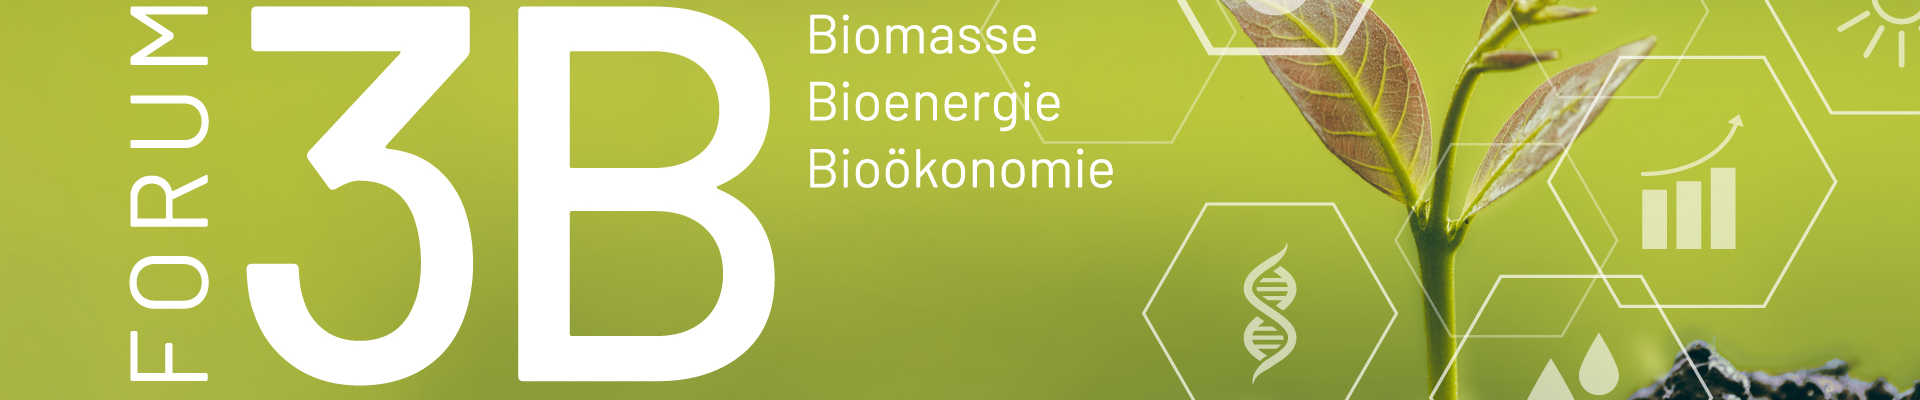 FORUM 3B | Biomasse, Bioenergie und Bioökonomie